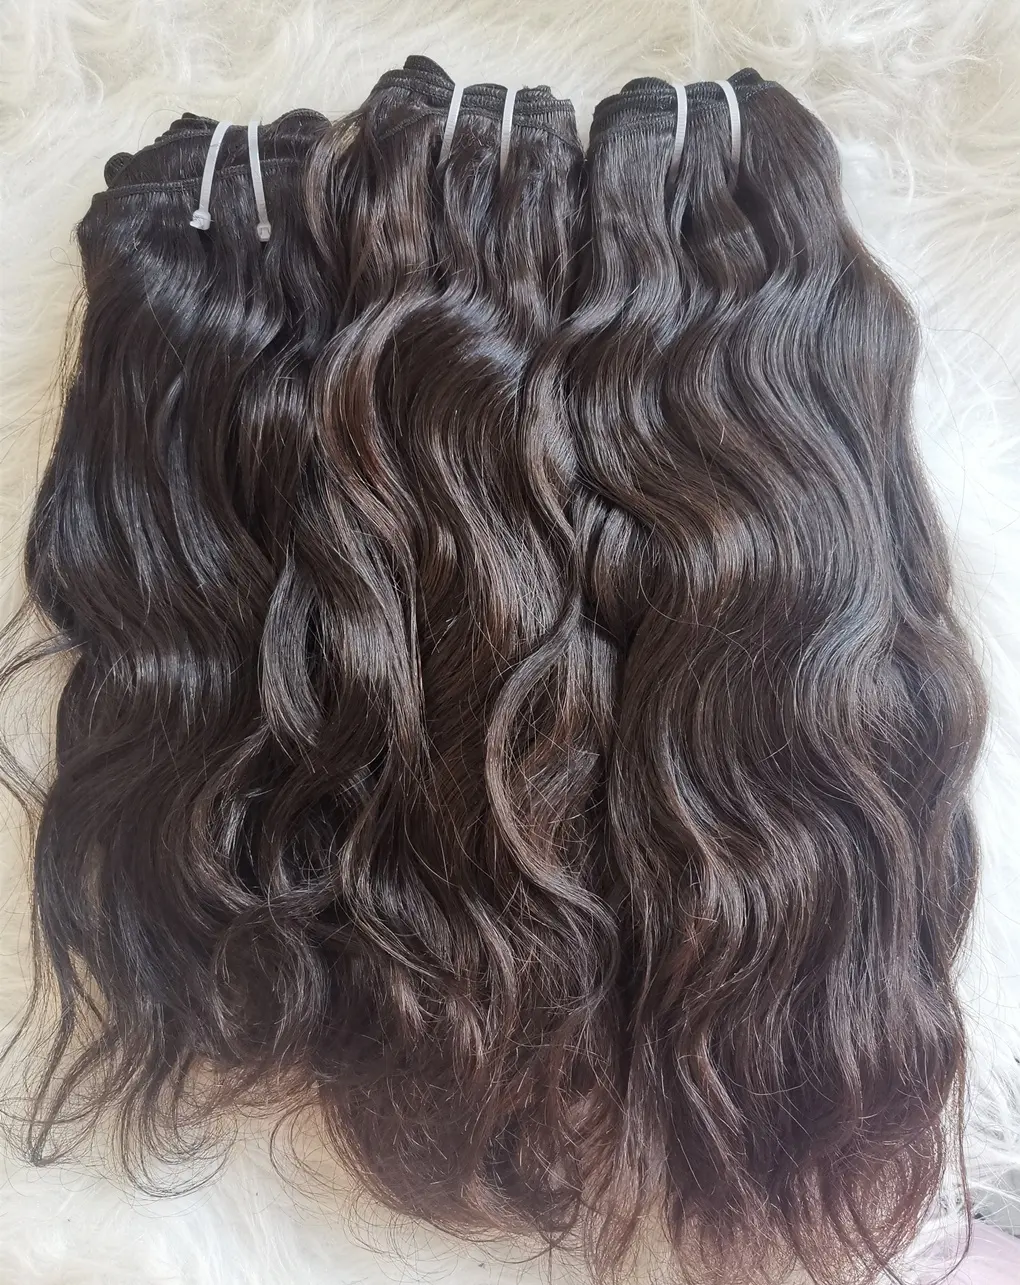 Extensão de cabelo ondulado natural sem processado, mais de 5 anos, pacotes de extensões de cabelo ondulado para salão de beleza